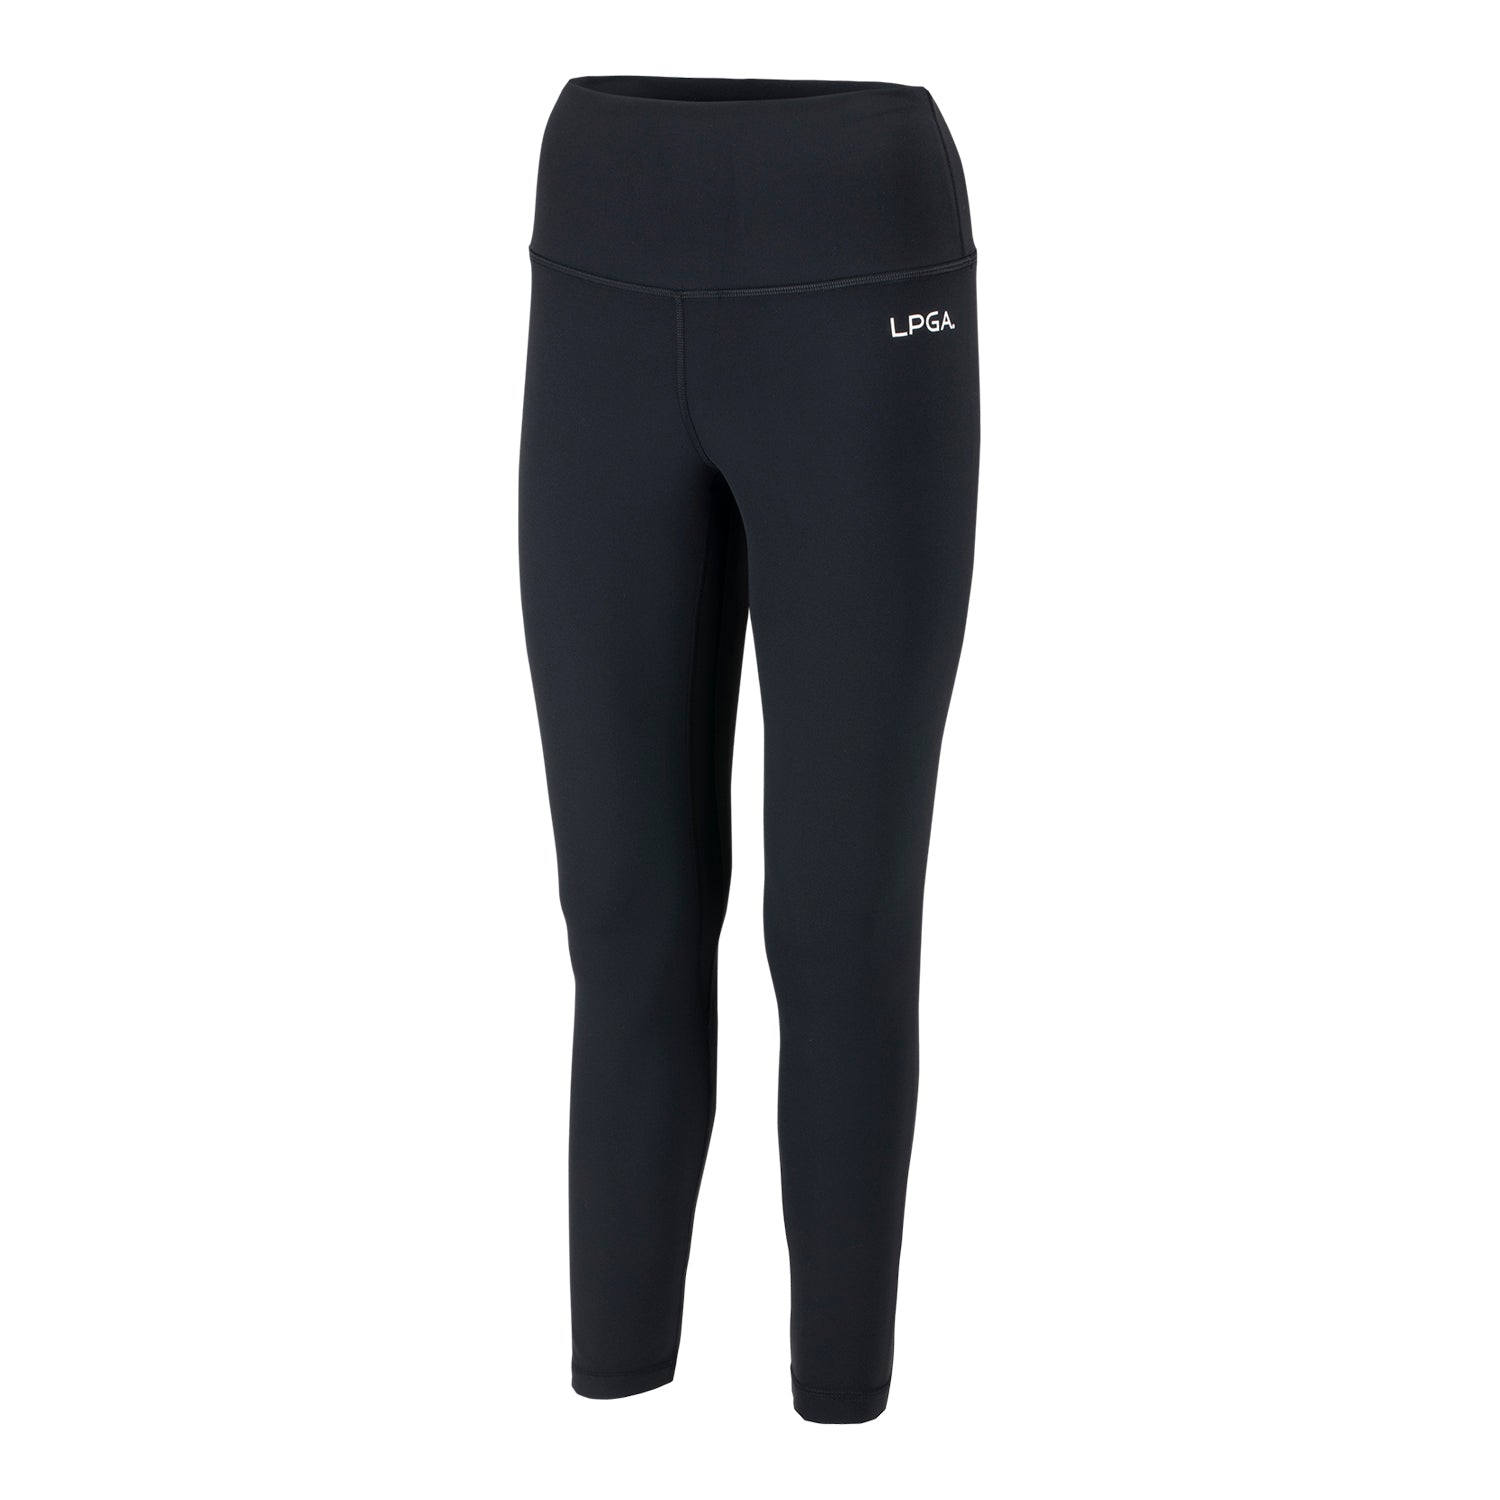 NWT lululemon align legging 25” black w/ pockets